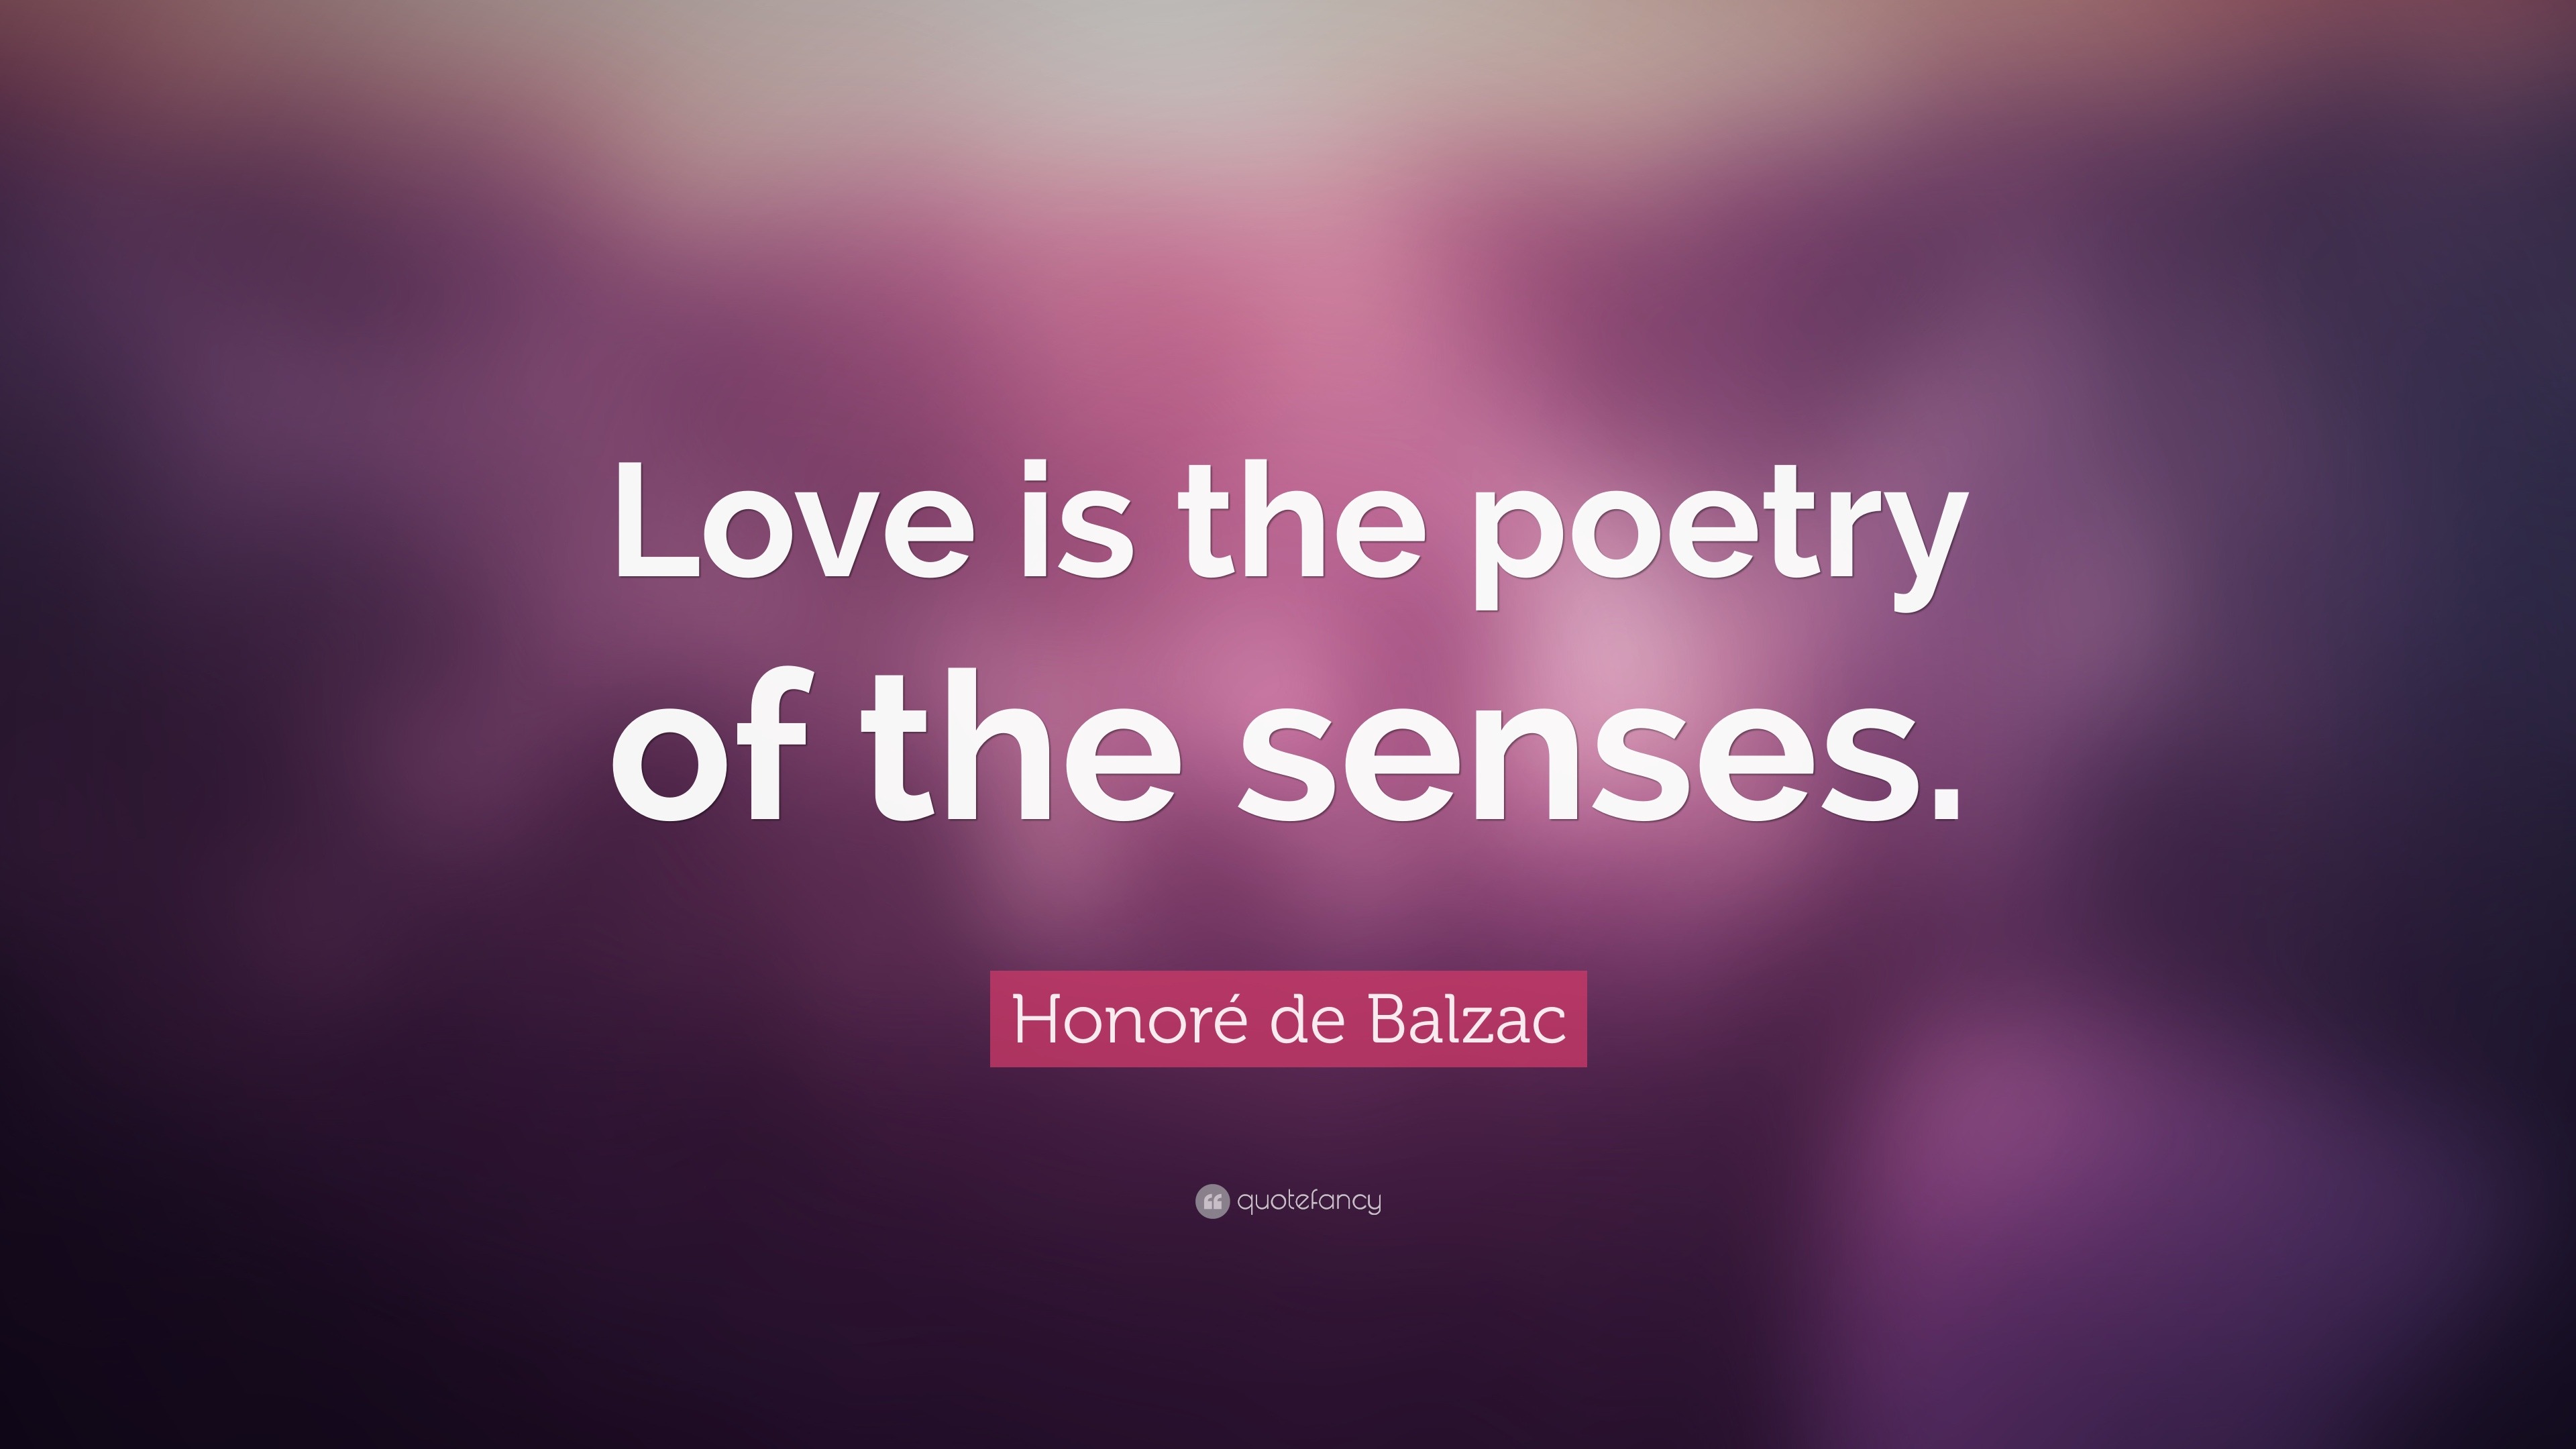 Honoré de Balzac Quote: “Love is the poetry of the senses.”